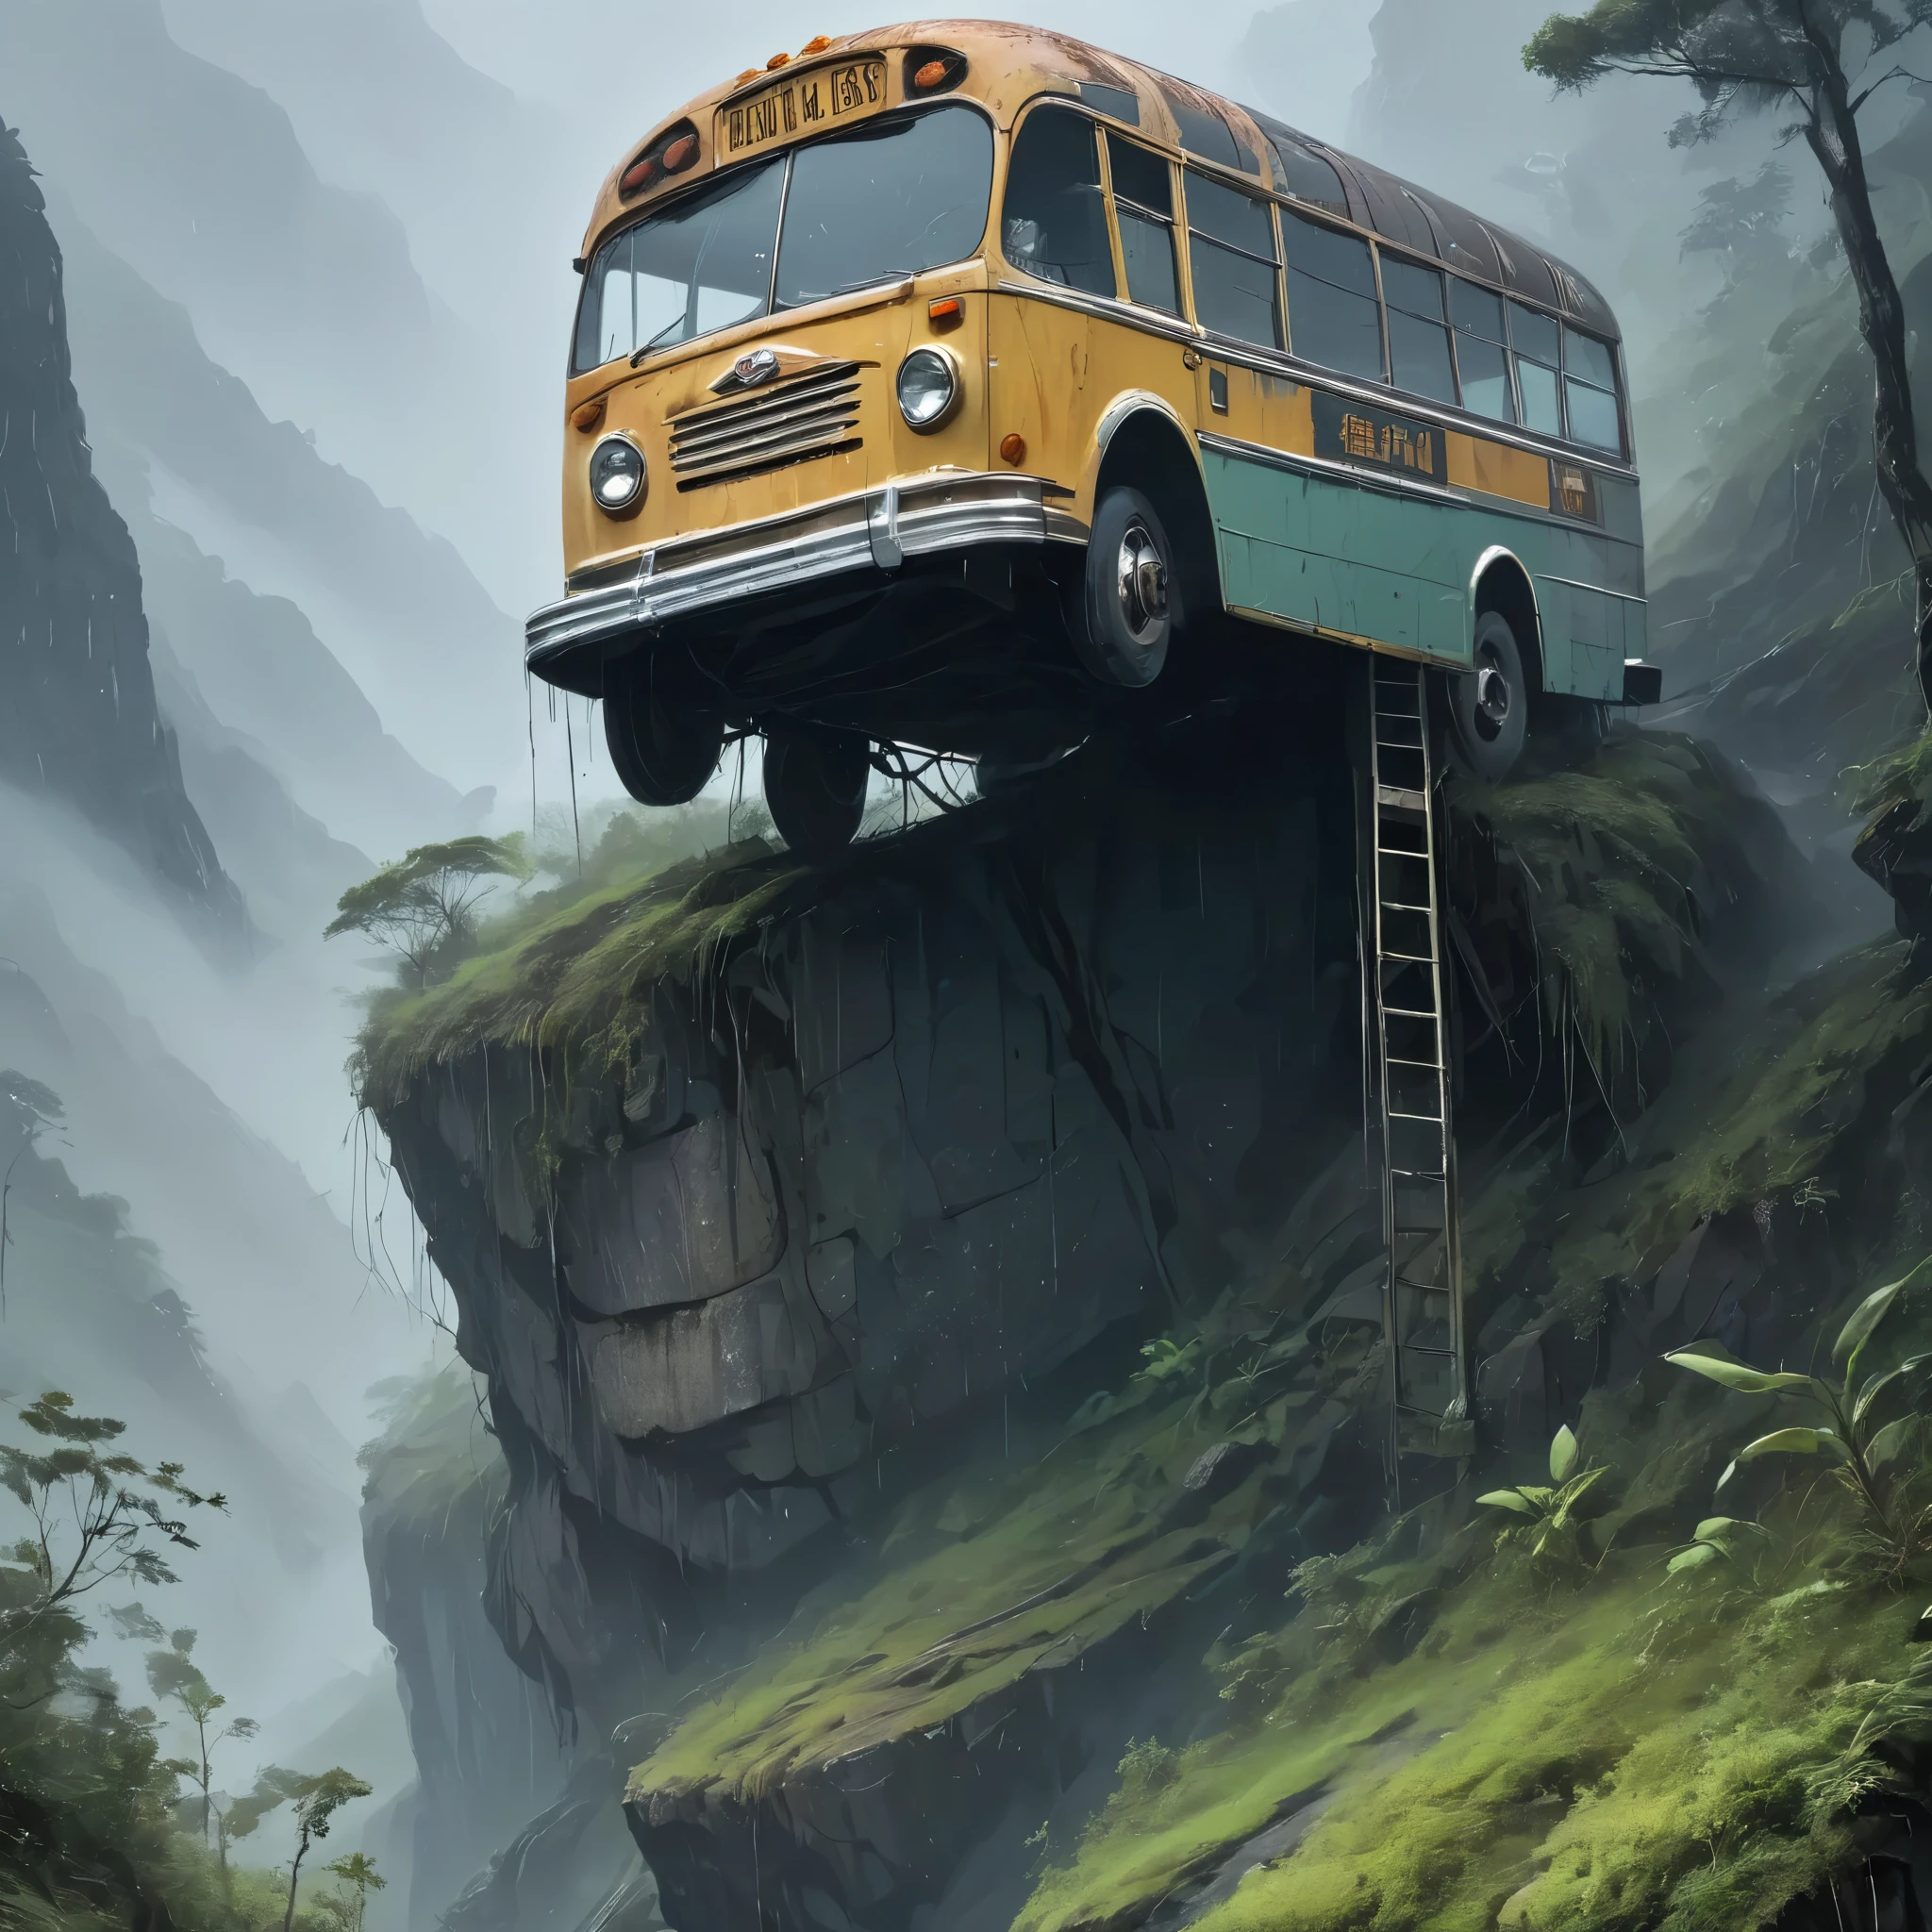 폭우가 쏟아지고 짙은 안개에 휩싸인 이 이미지는 험준한 산 꼭대기에 위태롭게 자리잡은 풍화되고 낡은 버스를 포착하여 서로 다른 두 세계를 연결하는 예상치 못한 다리 역할을 합니다.